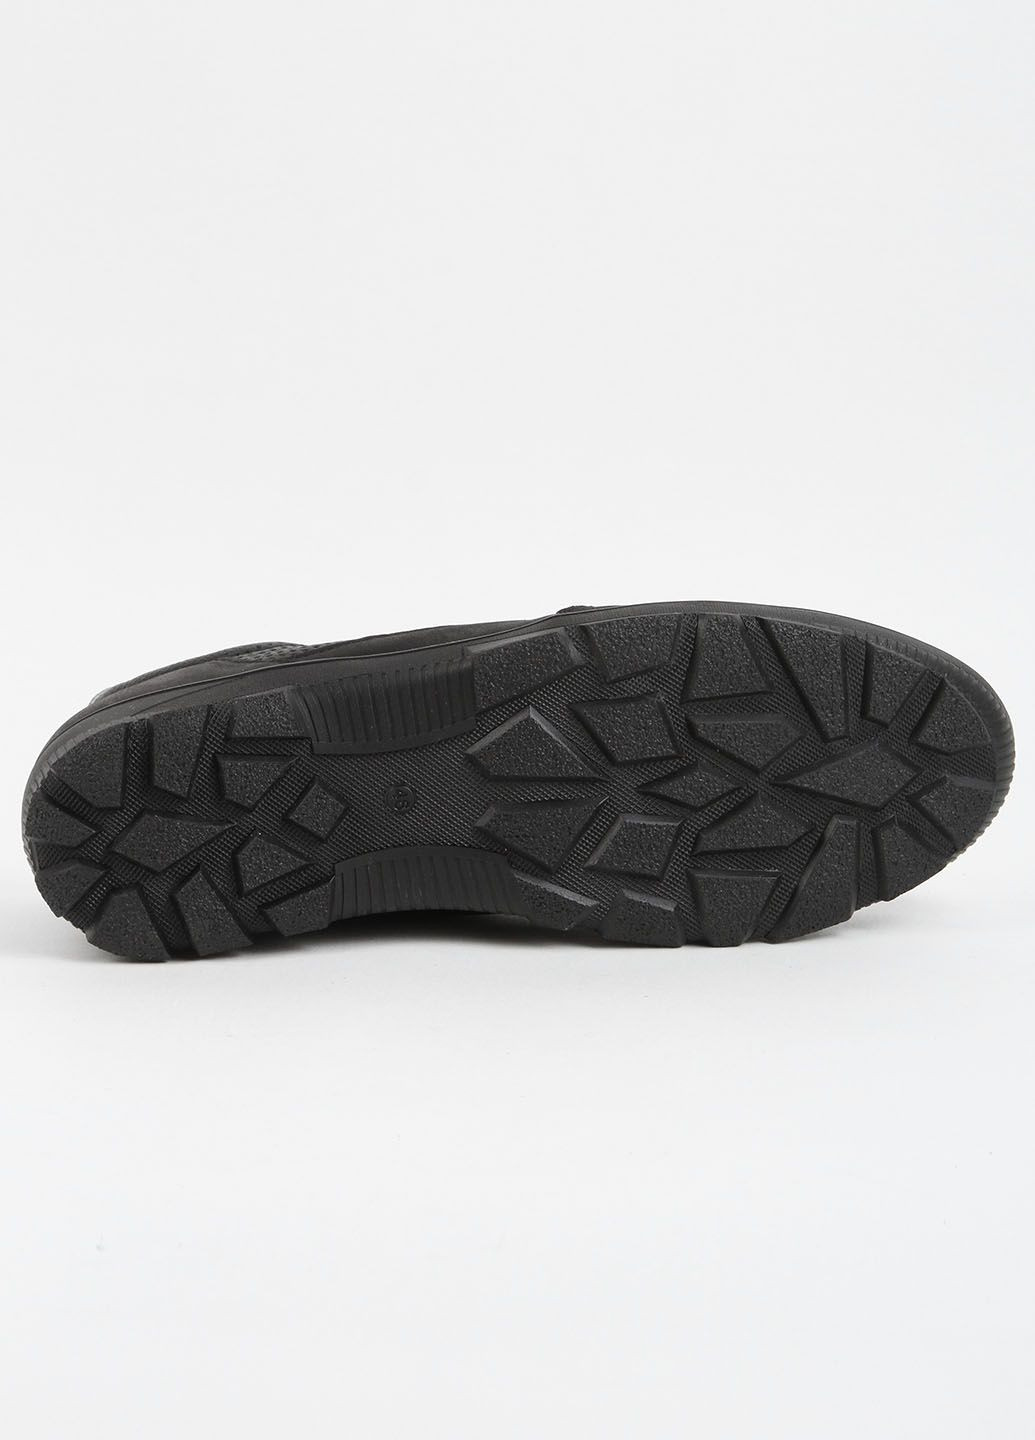 Черные кроссовки мужские кожаные 339620 Power